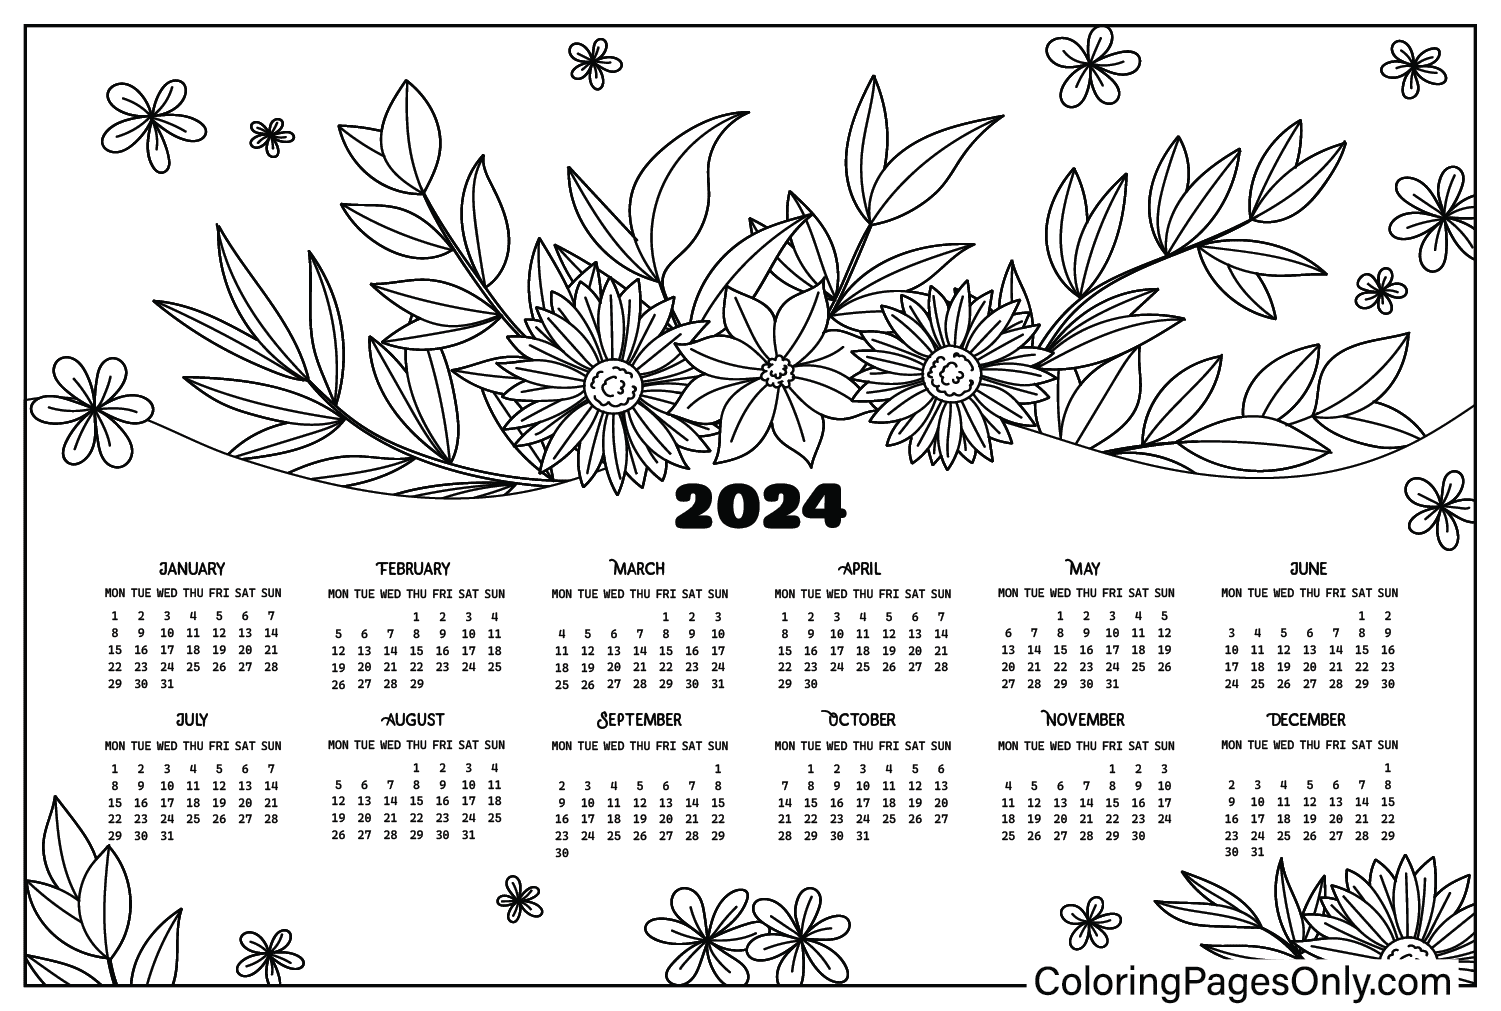 Раскраска Календарь на 2024 год из календаря 2024